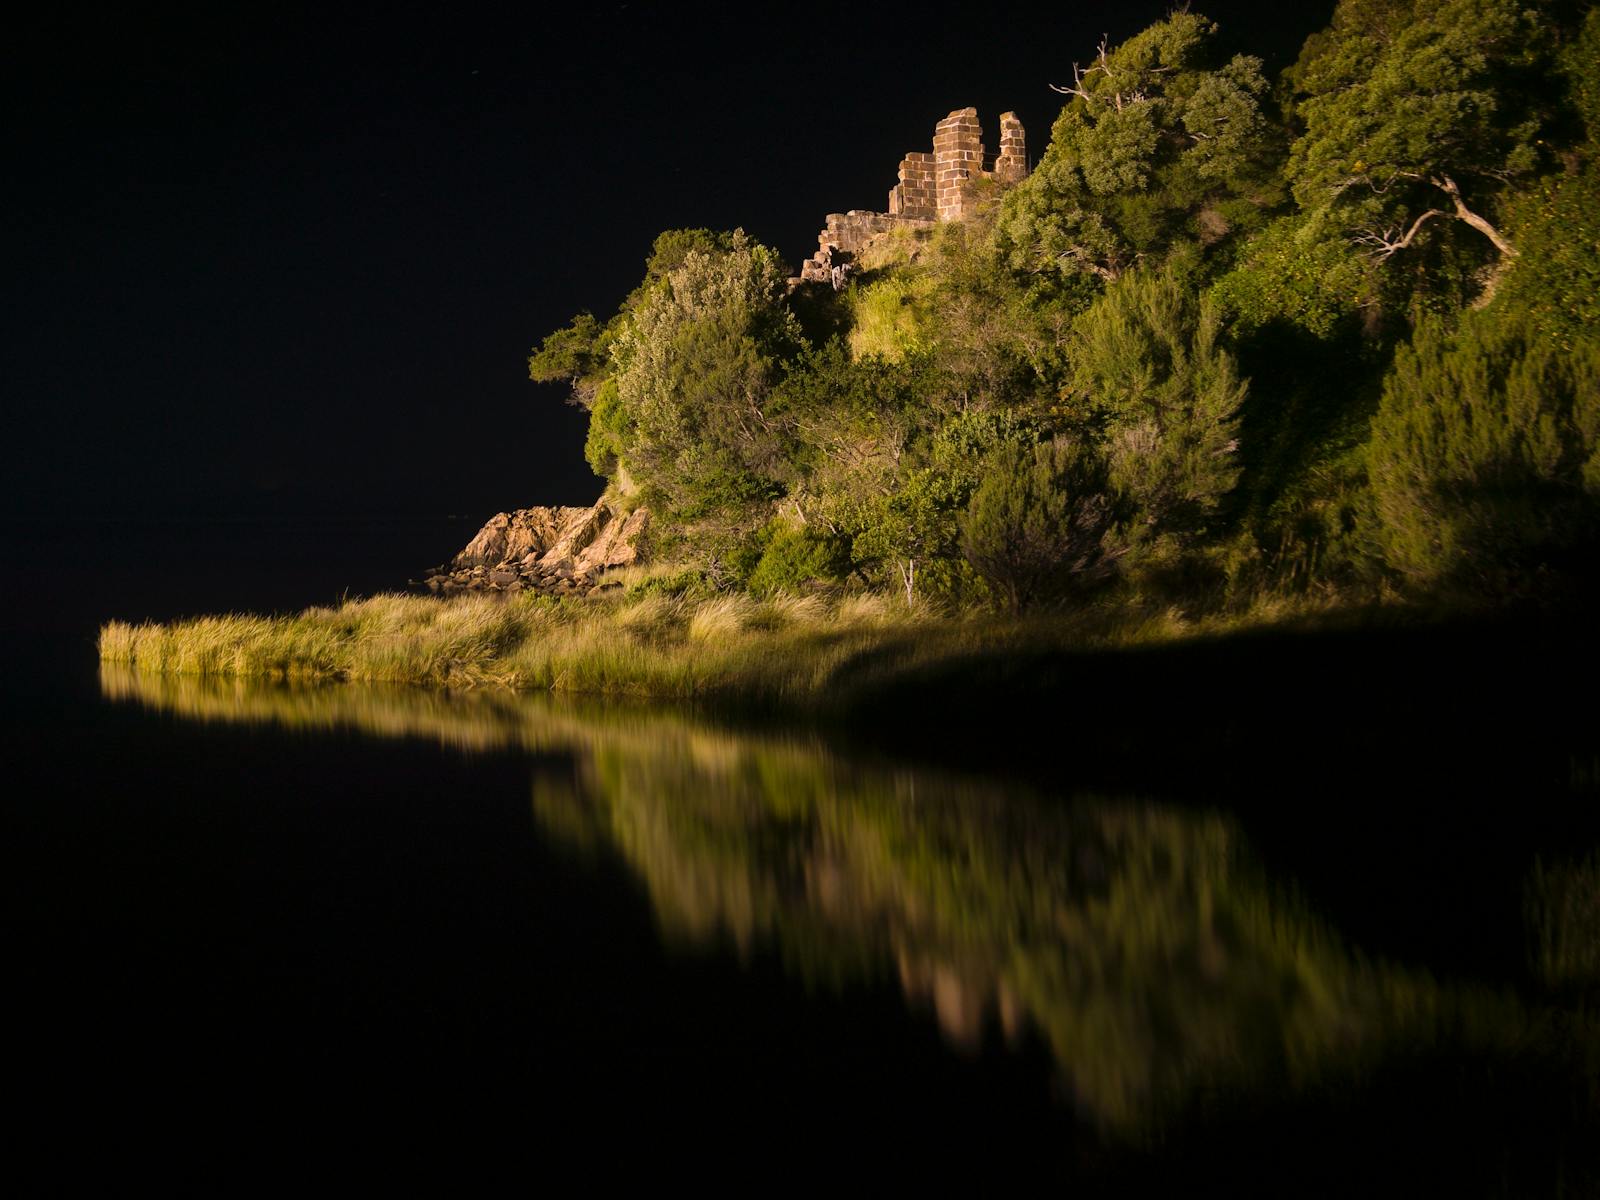 Sarah Island at night